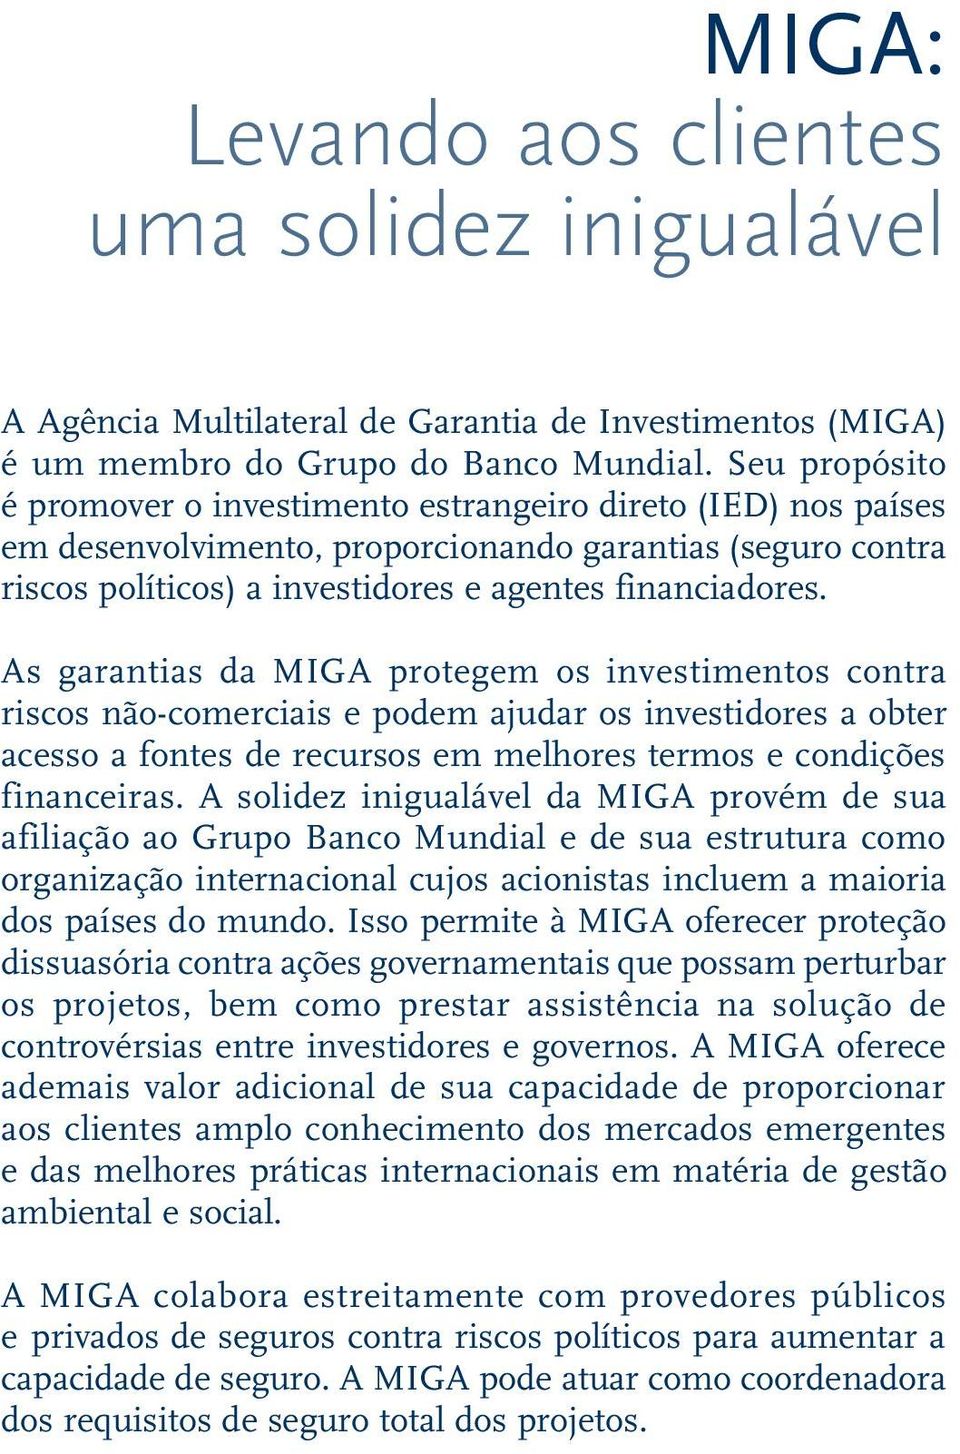 As garantias da MIGA protegem os investimentos contra riscos não-comerciais e podem ajudar os investidores a obter acesso a fontes de recursos em melhores termos e condições financeiras.